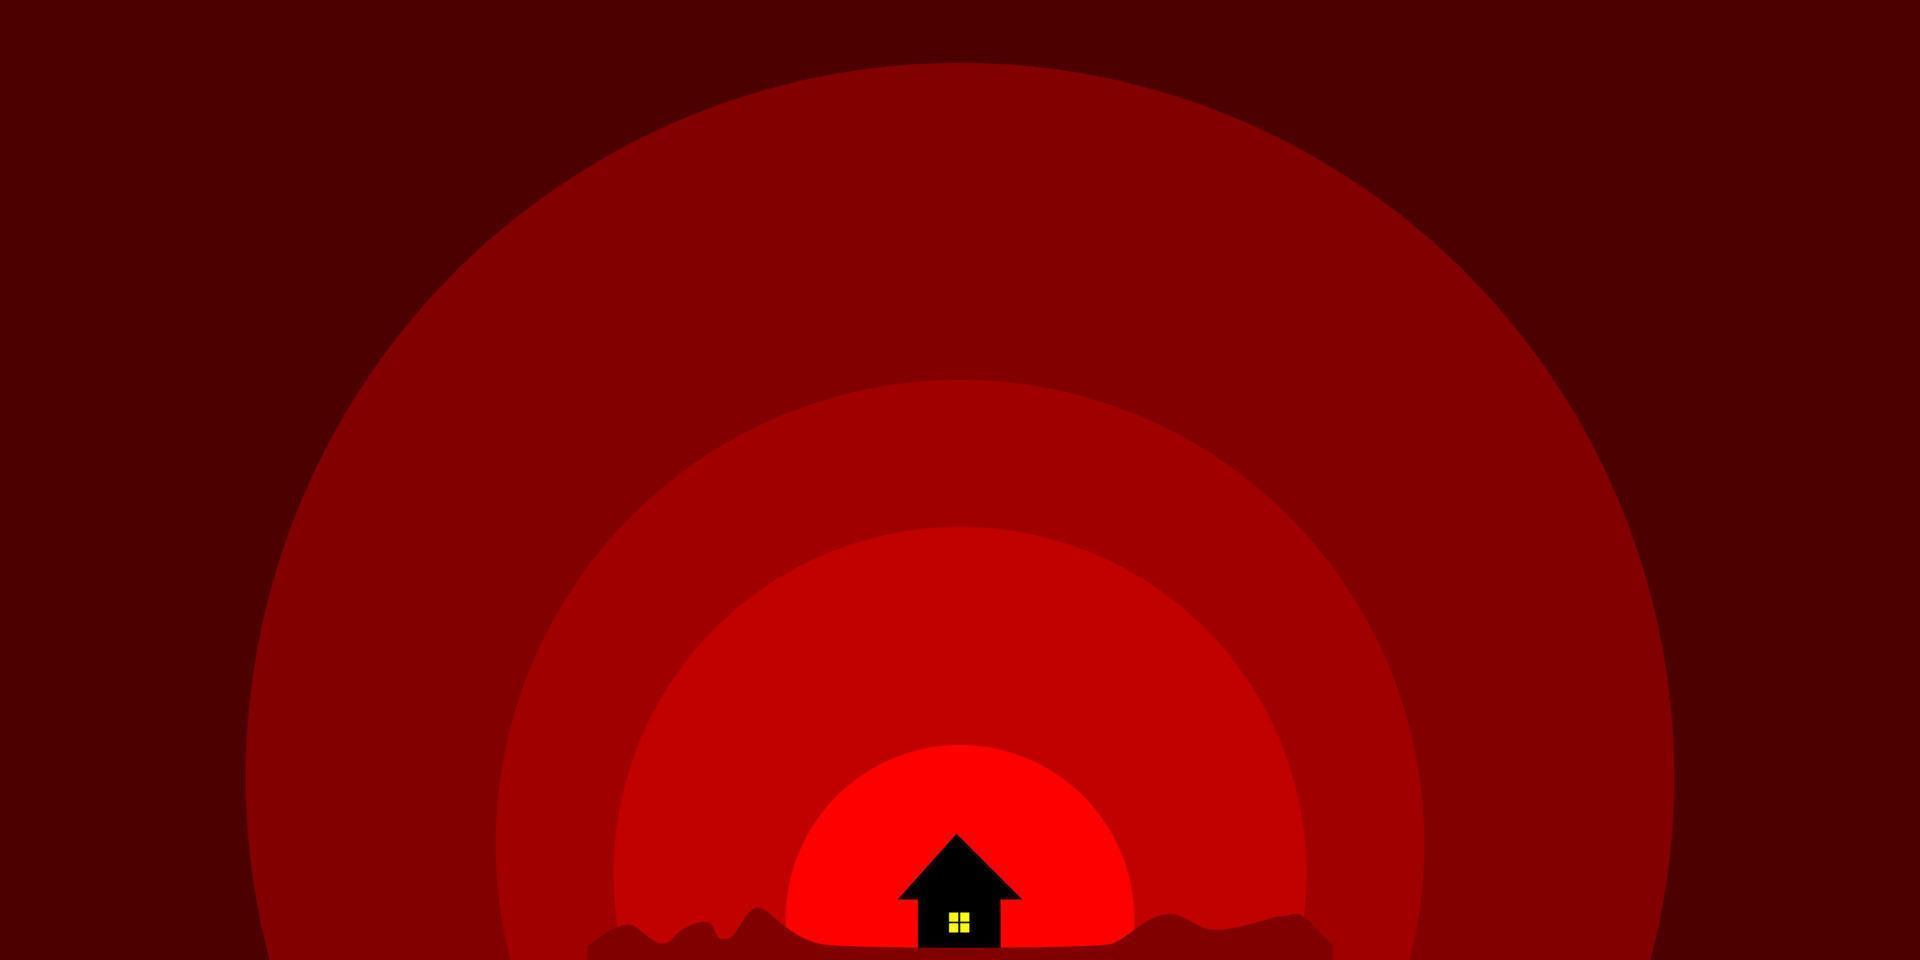 céu vermelho com casinha no meio vetor